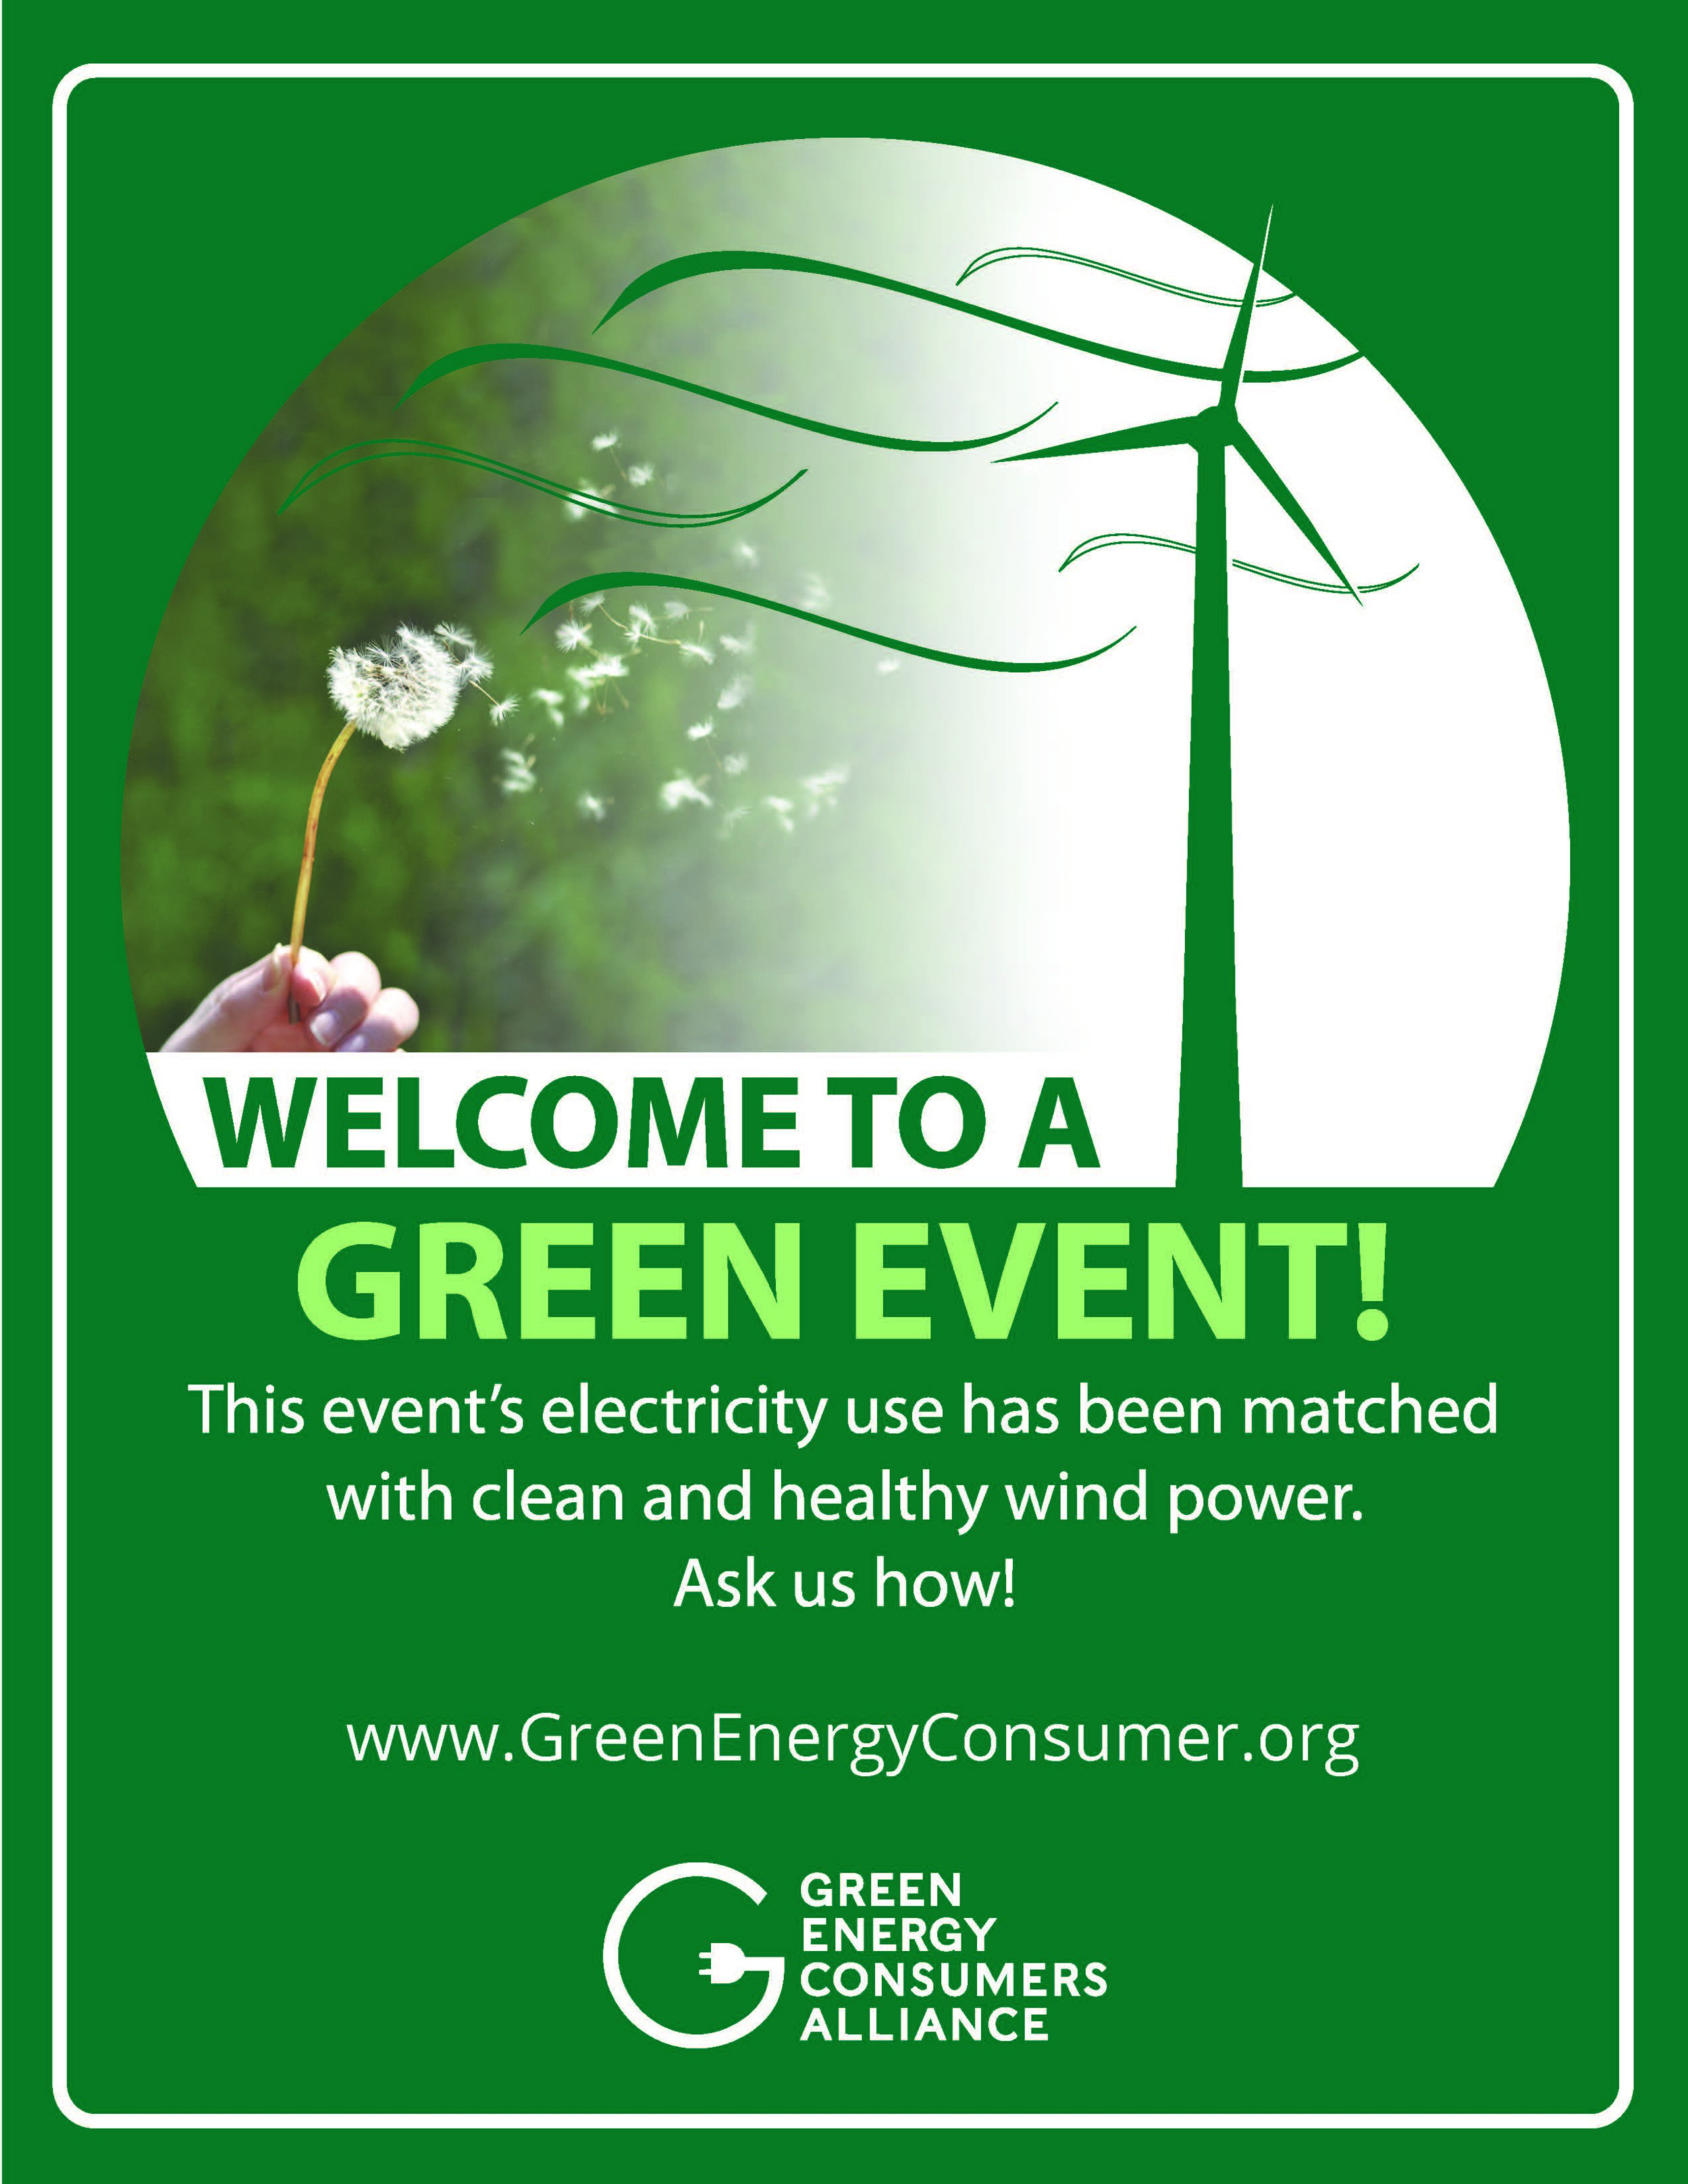 感谢绿色能源消费者联盟!